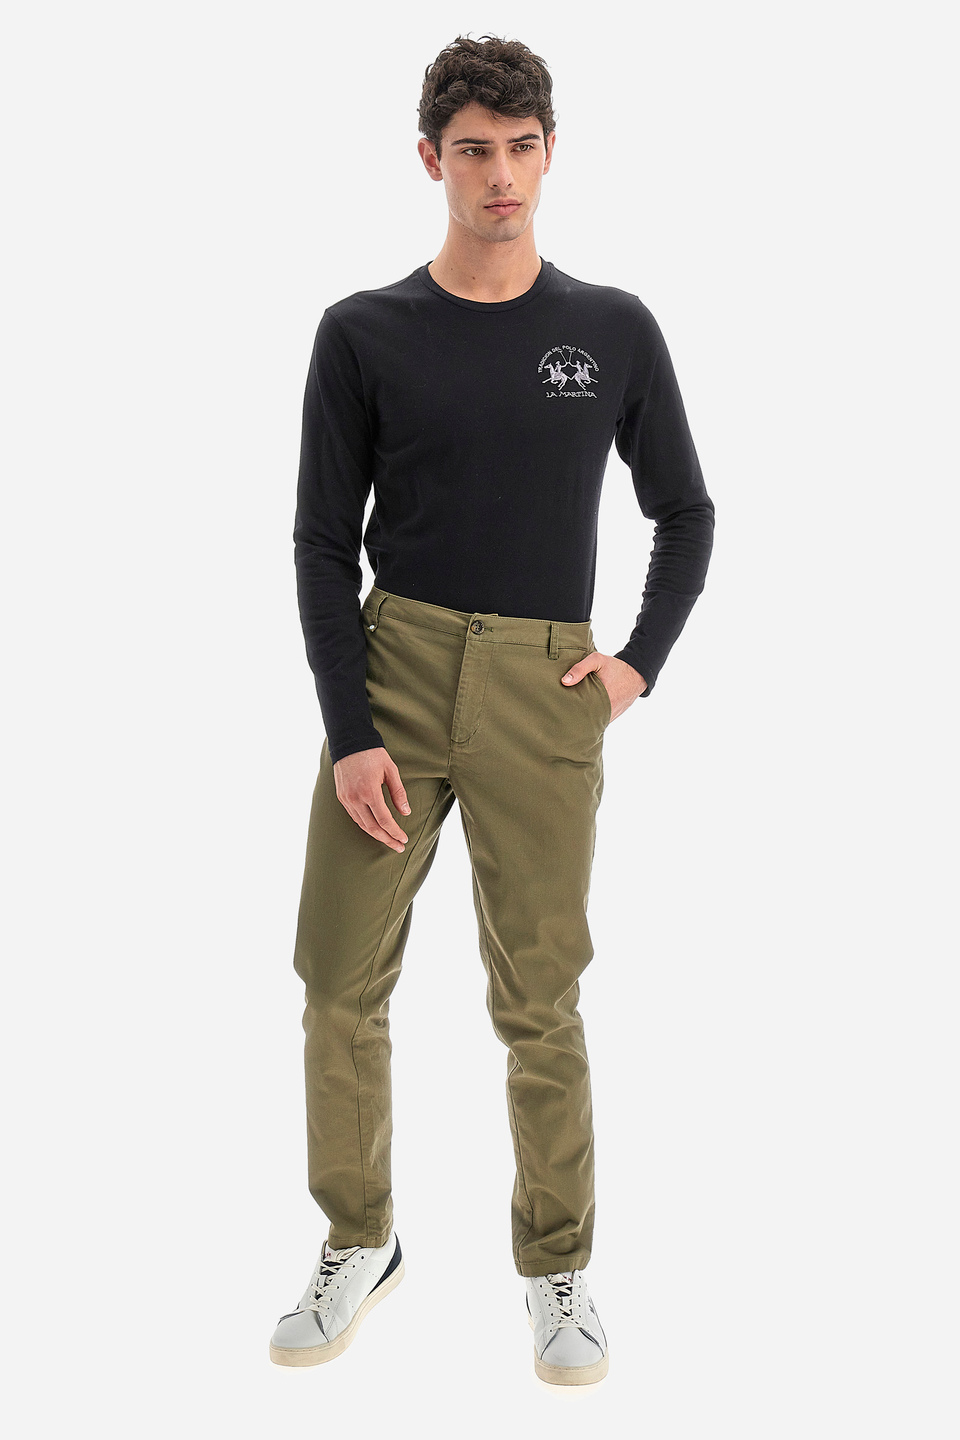 Pantalone da uomo in cotone chino elasticizzato slim fit  -  Siard | La Martina - Official Online Shop